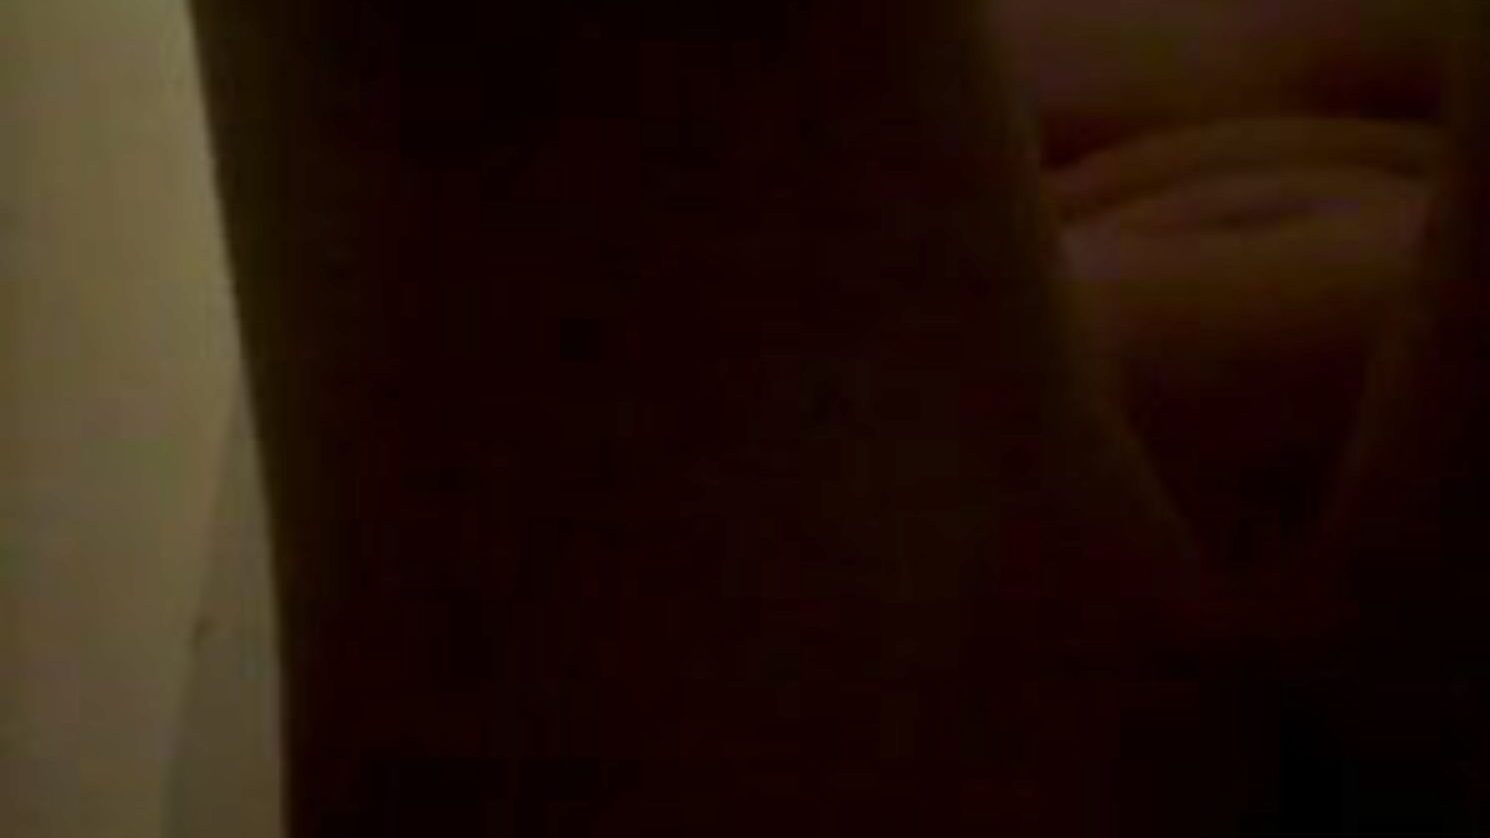 piss et frotte sur le corps, porno porno zdarma 45: xhamster hodinky piss et frotte sur le corps klip na xhamster, nejtučnější web orgie trubice s hromadou pee čůrání a domácí porno filmové scény